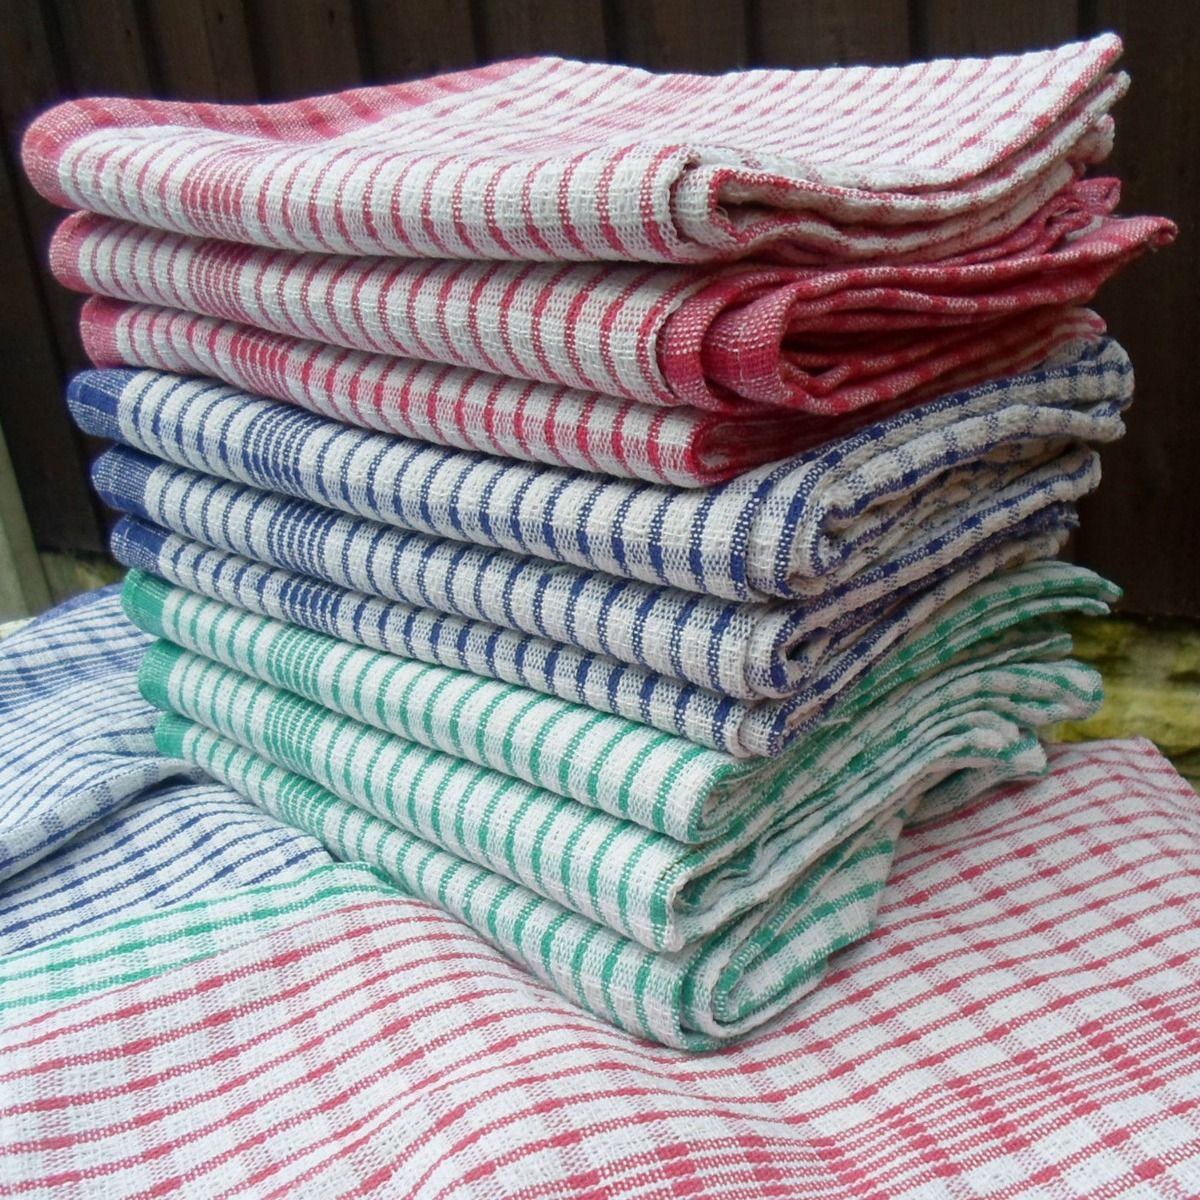 Bulk Manufacturer of Cotton Kitchen Cloths Tea Towels